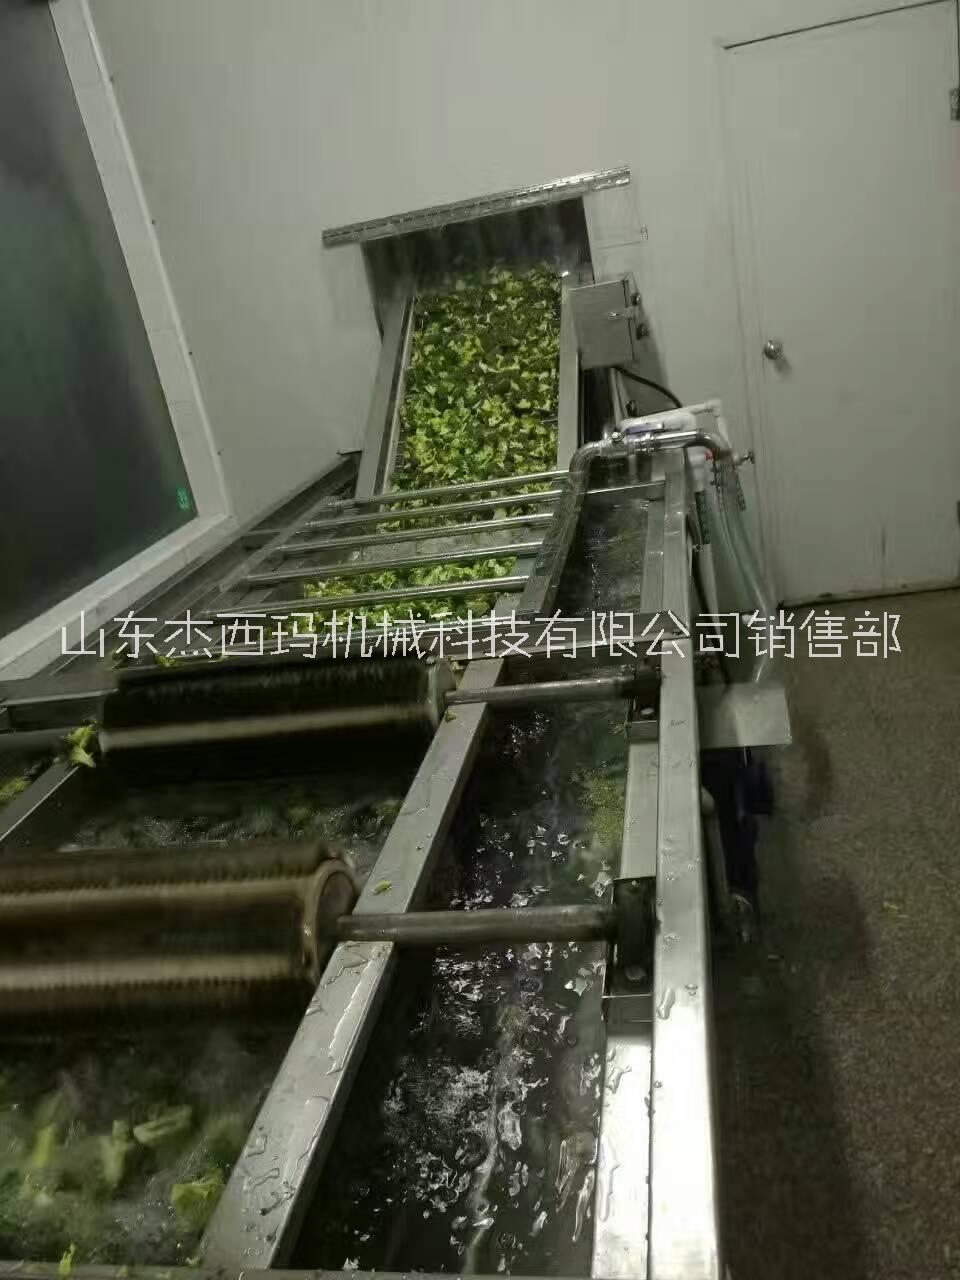 潍坊市清洗机  蔬菜清洗机 水果清洗机厂家